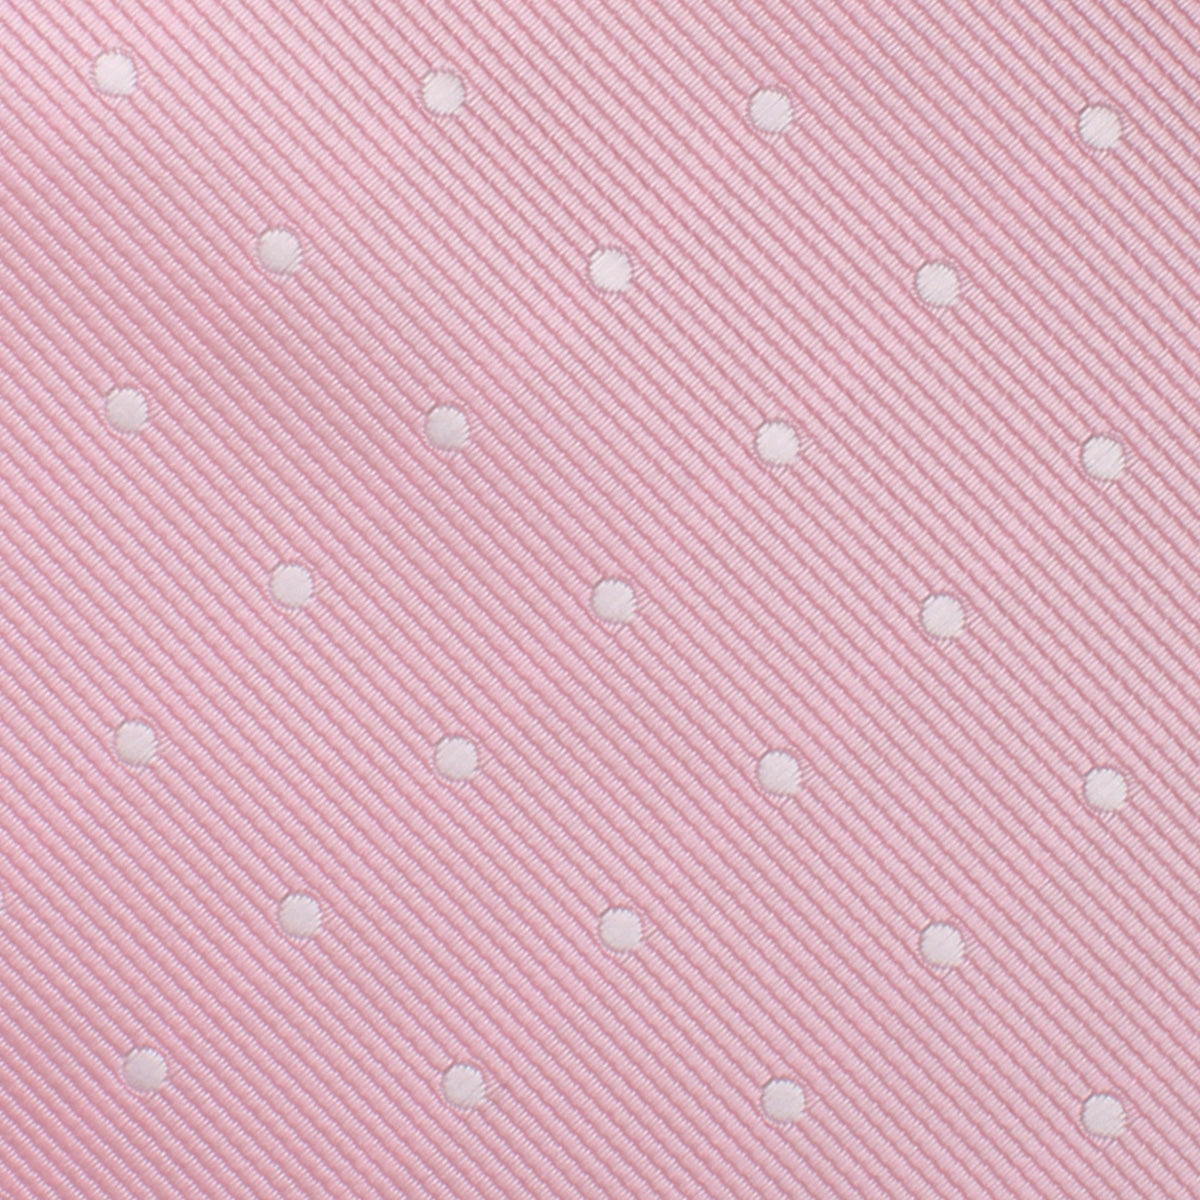 Soft Pink Polka Dots Pocket Square Fabric